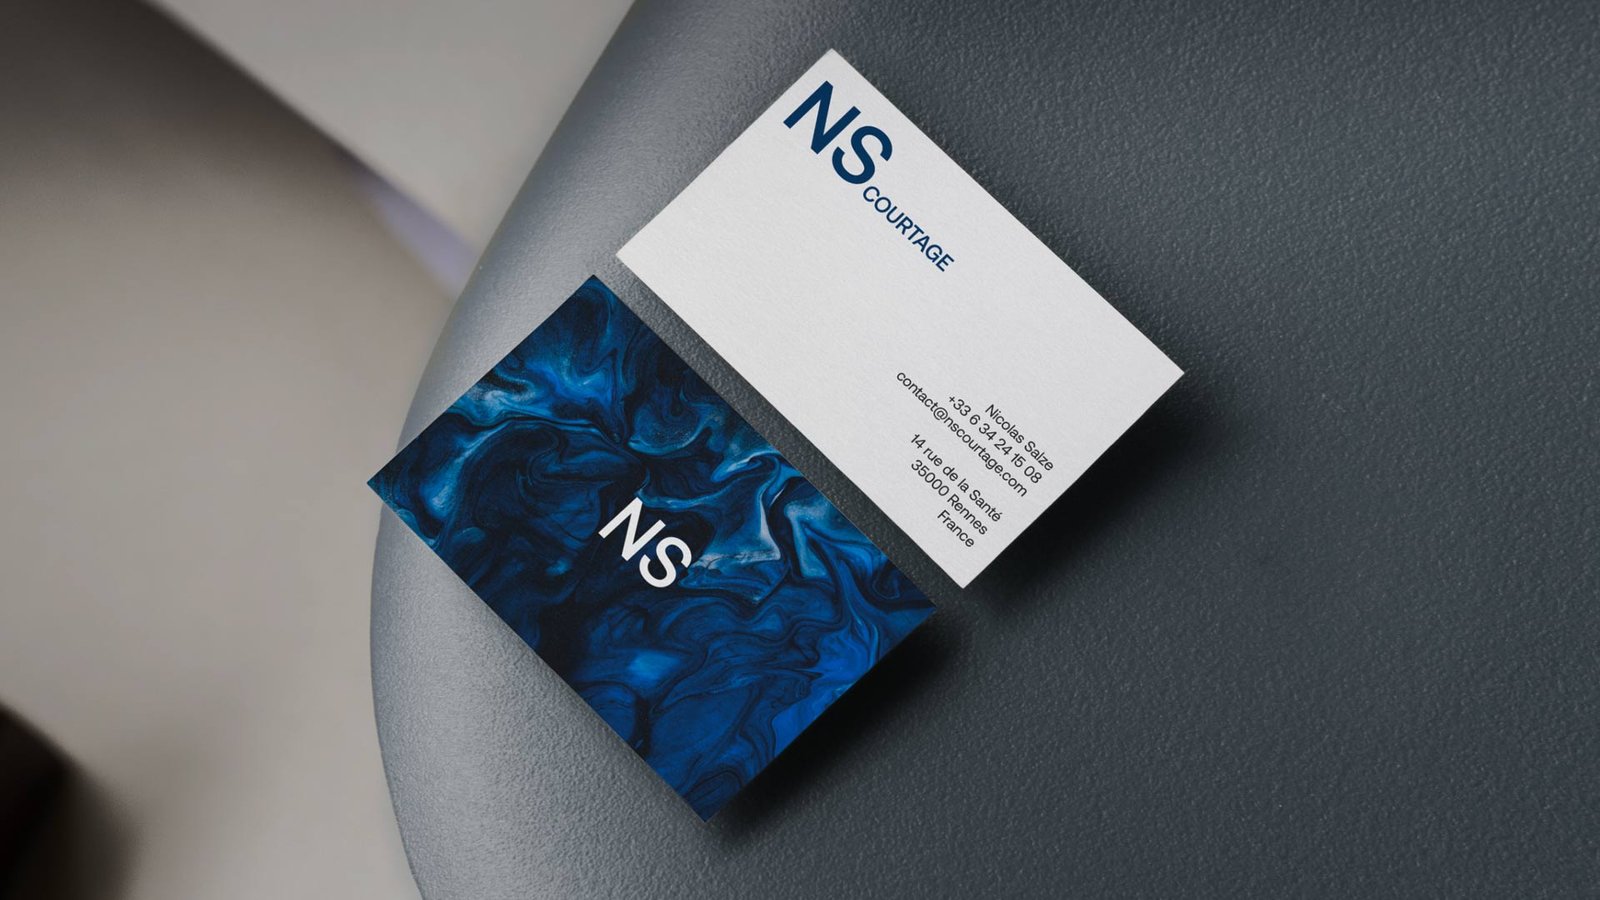 NS Courtage - Not In Paris Now, agence de branding, web design et communication à Rennes